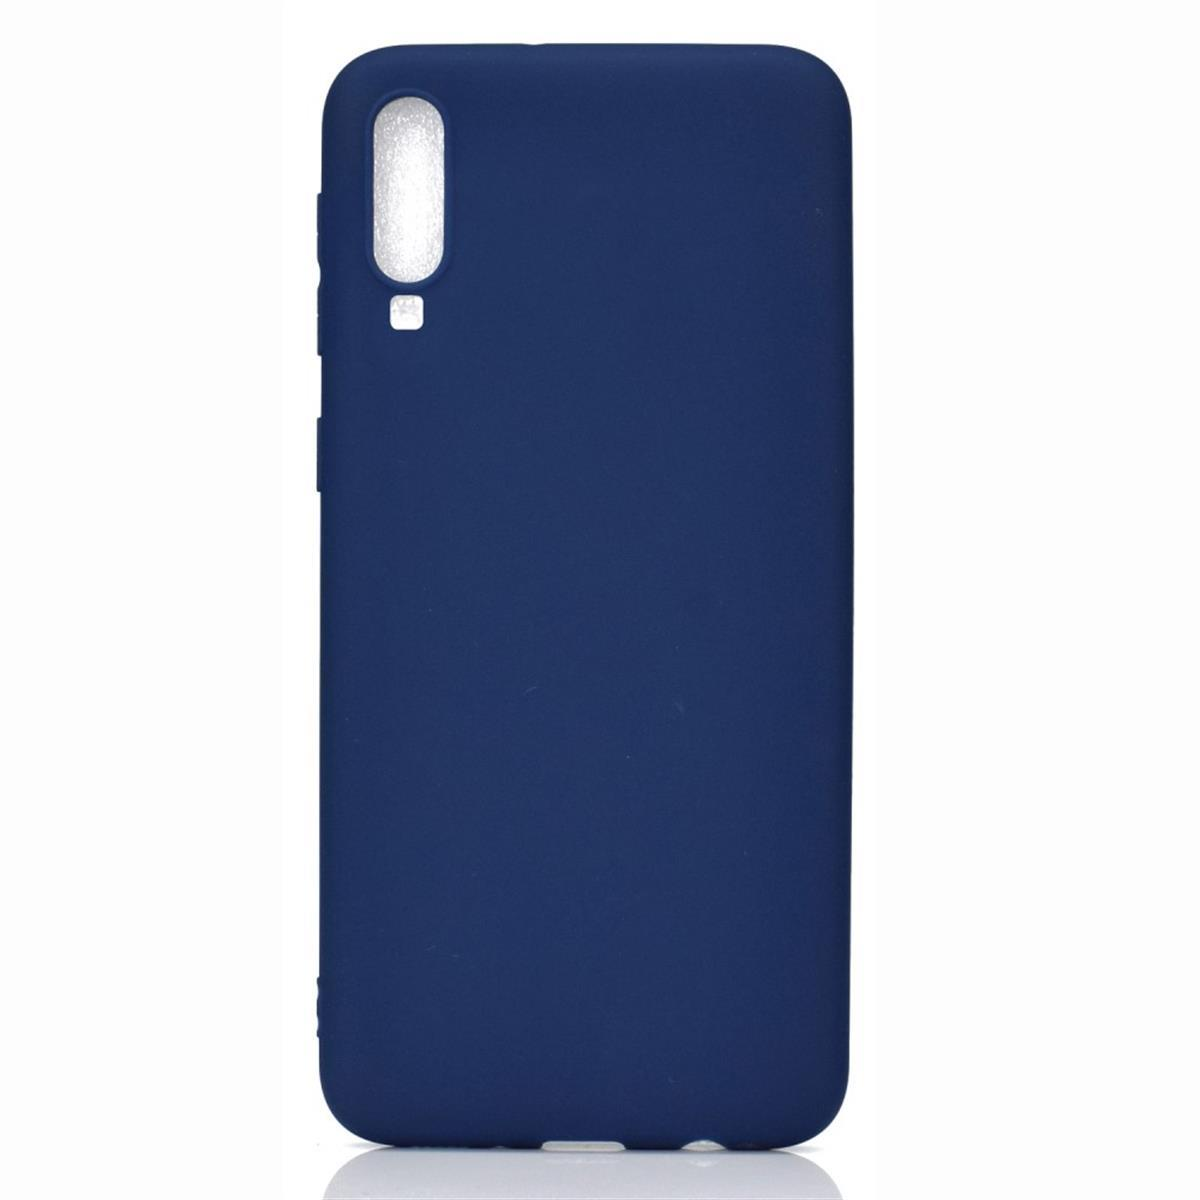 aus Galaxy Samsung, Backcover, Handycase COVERKINGZ Blau A70, Silikon,